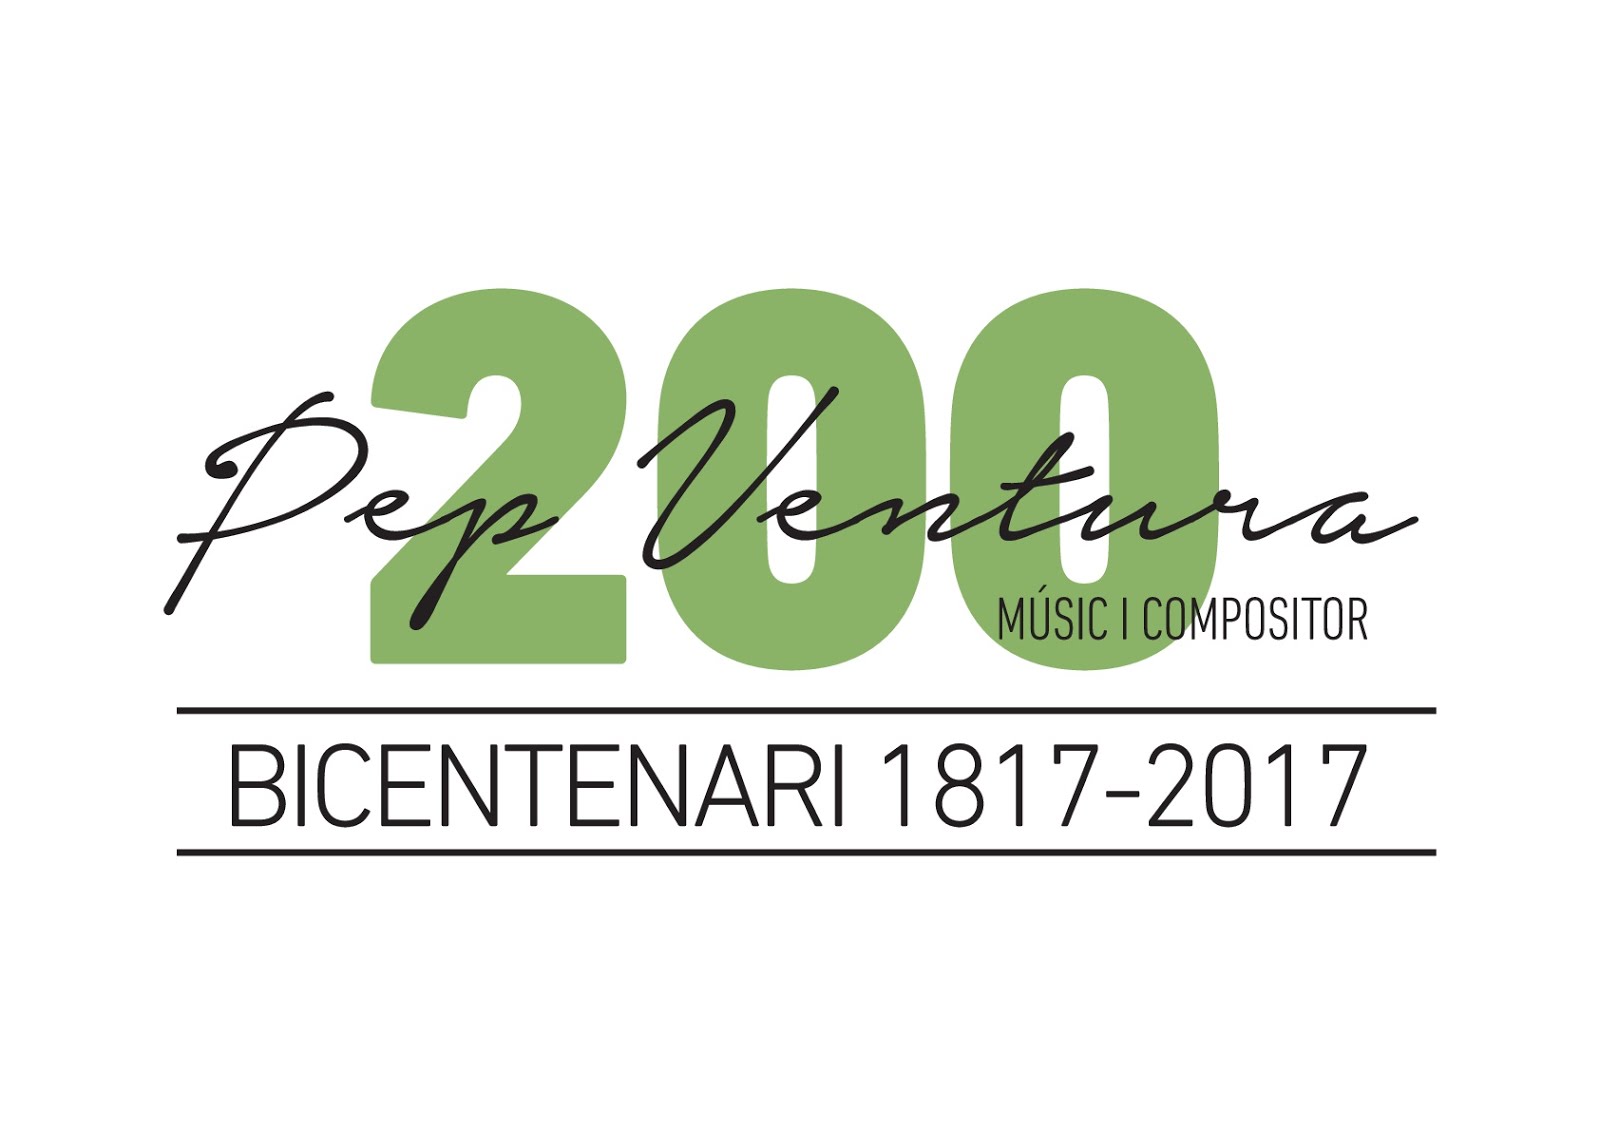 Bicentenari Pep Ventura